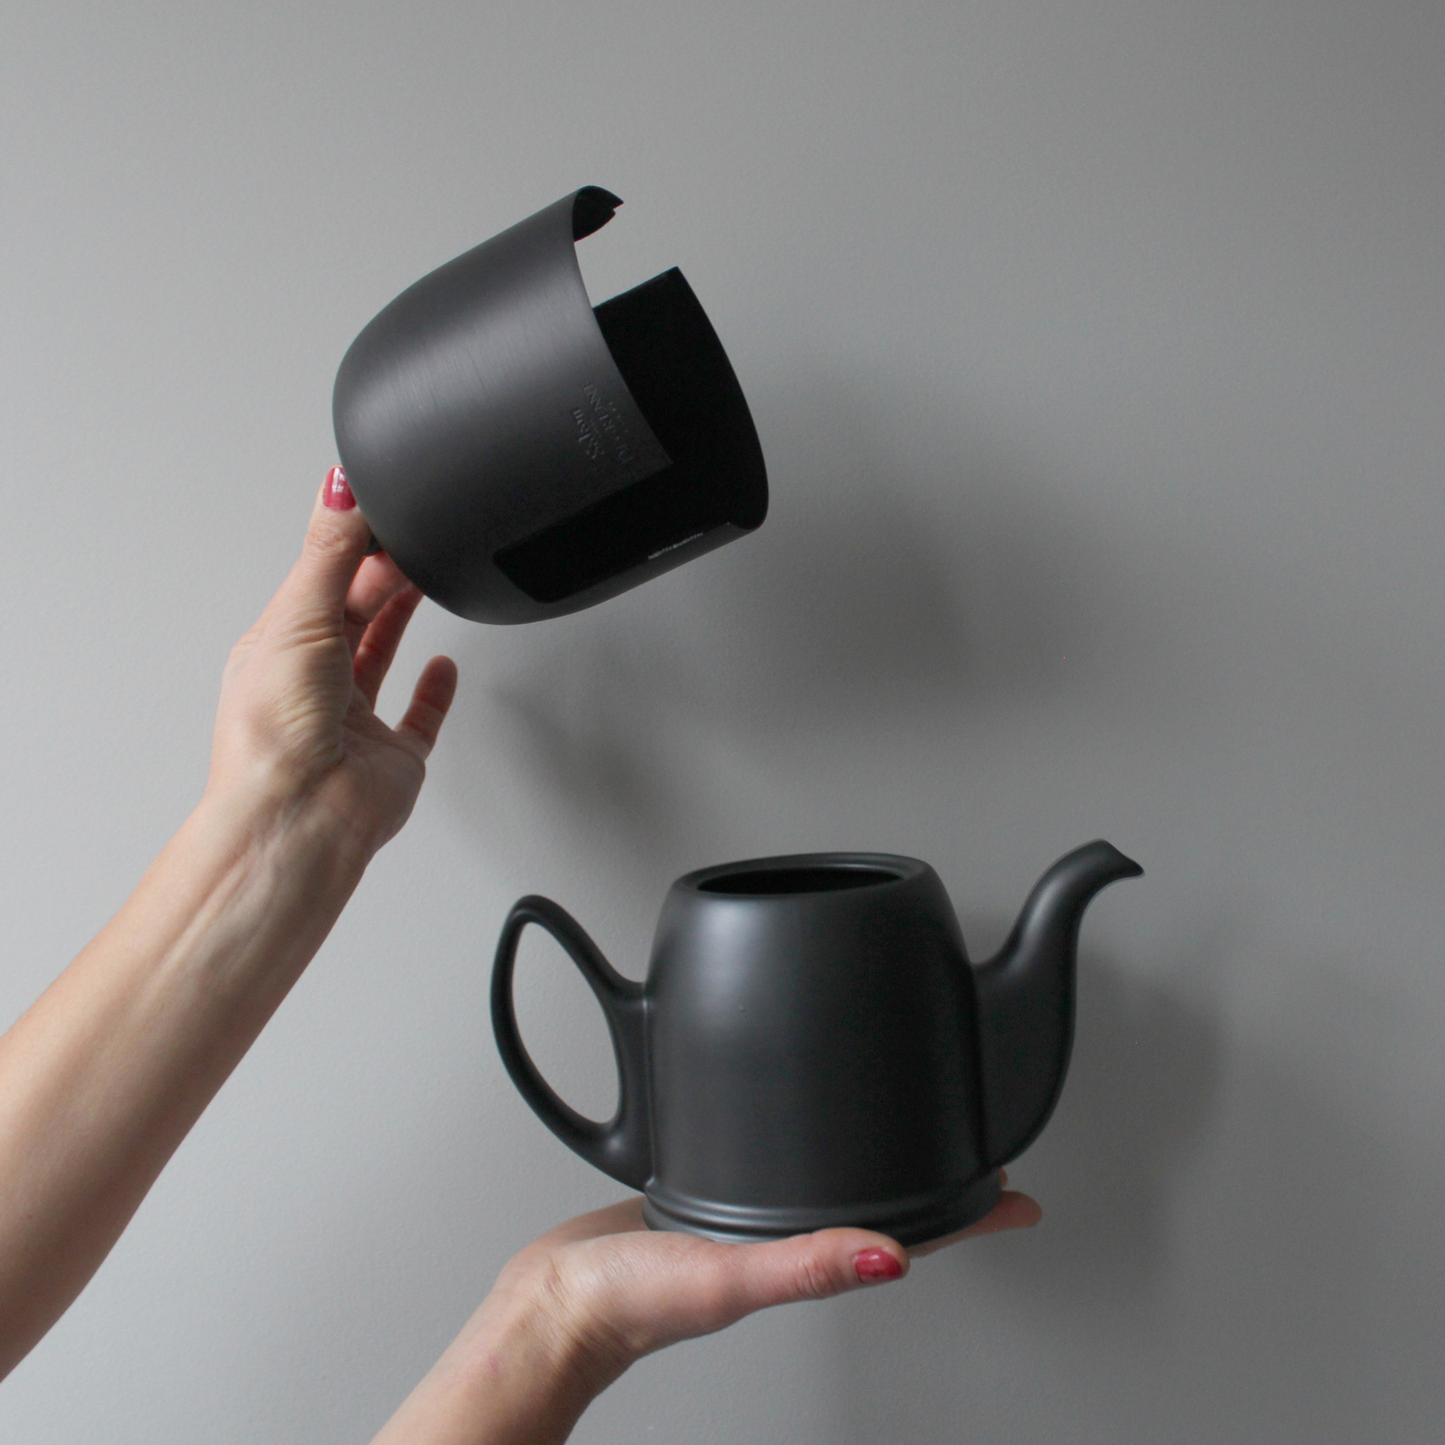 Degrenne Canada Salam Matte Black Teapot 4-cup - Clémentine Boutique